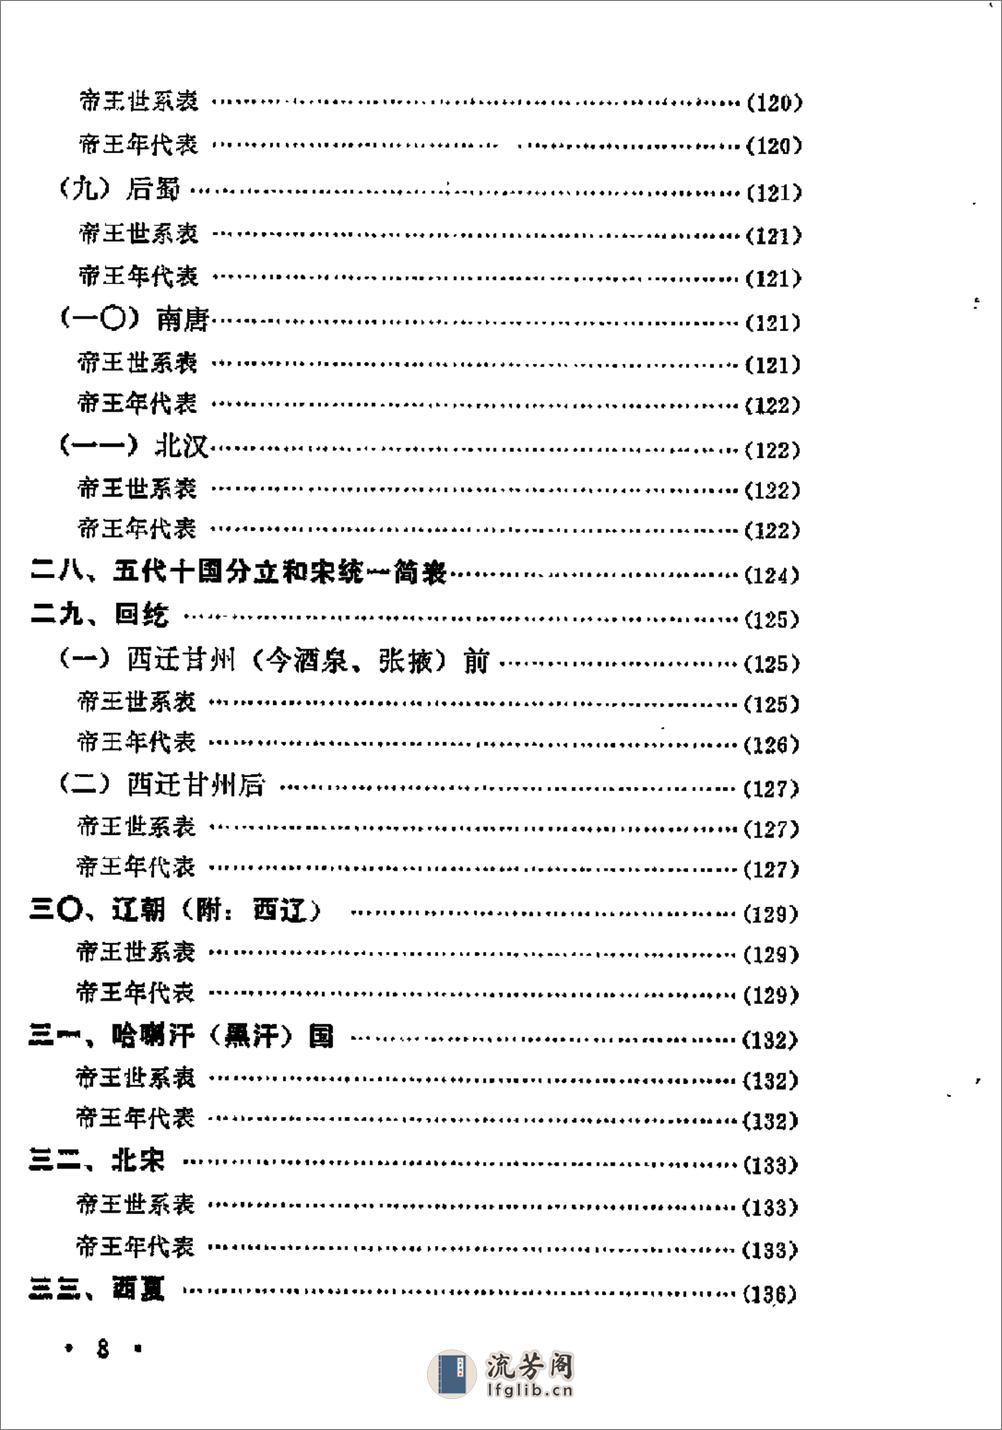 中国历史纪年简表·陈作良·中央党校1985 - 第11页预览图